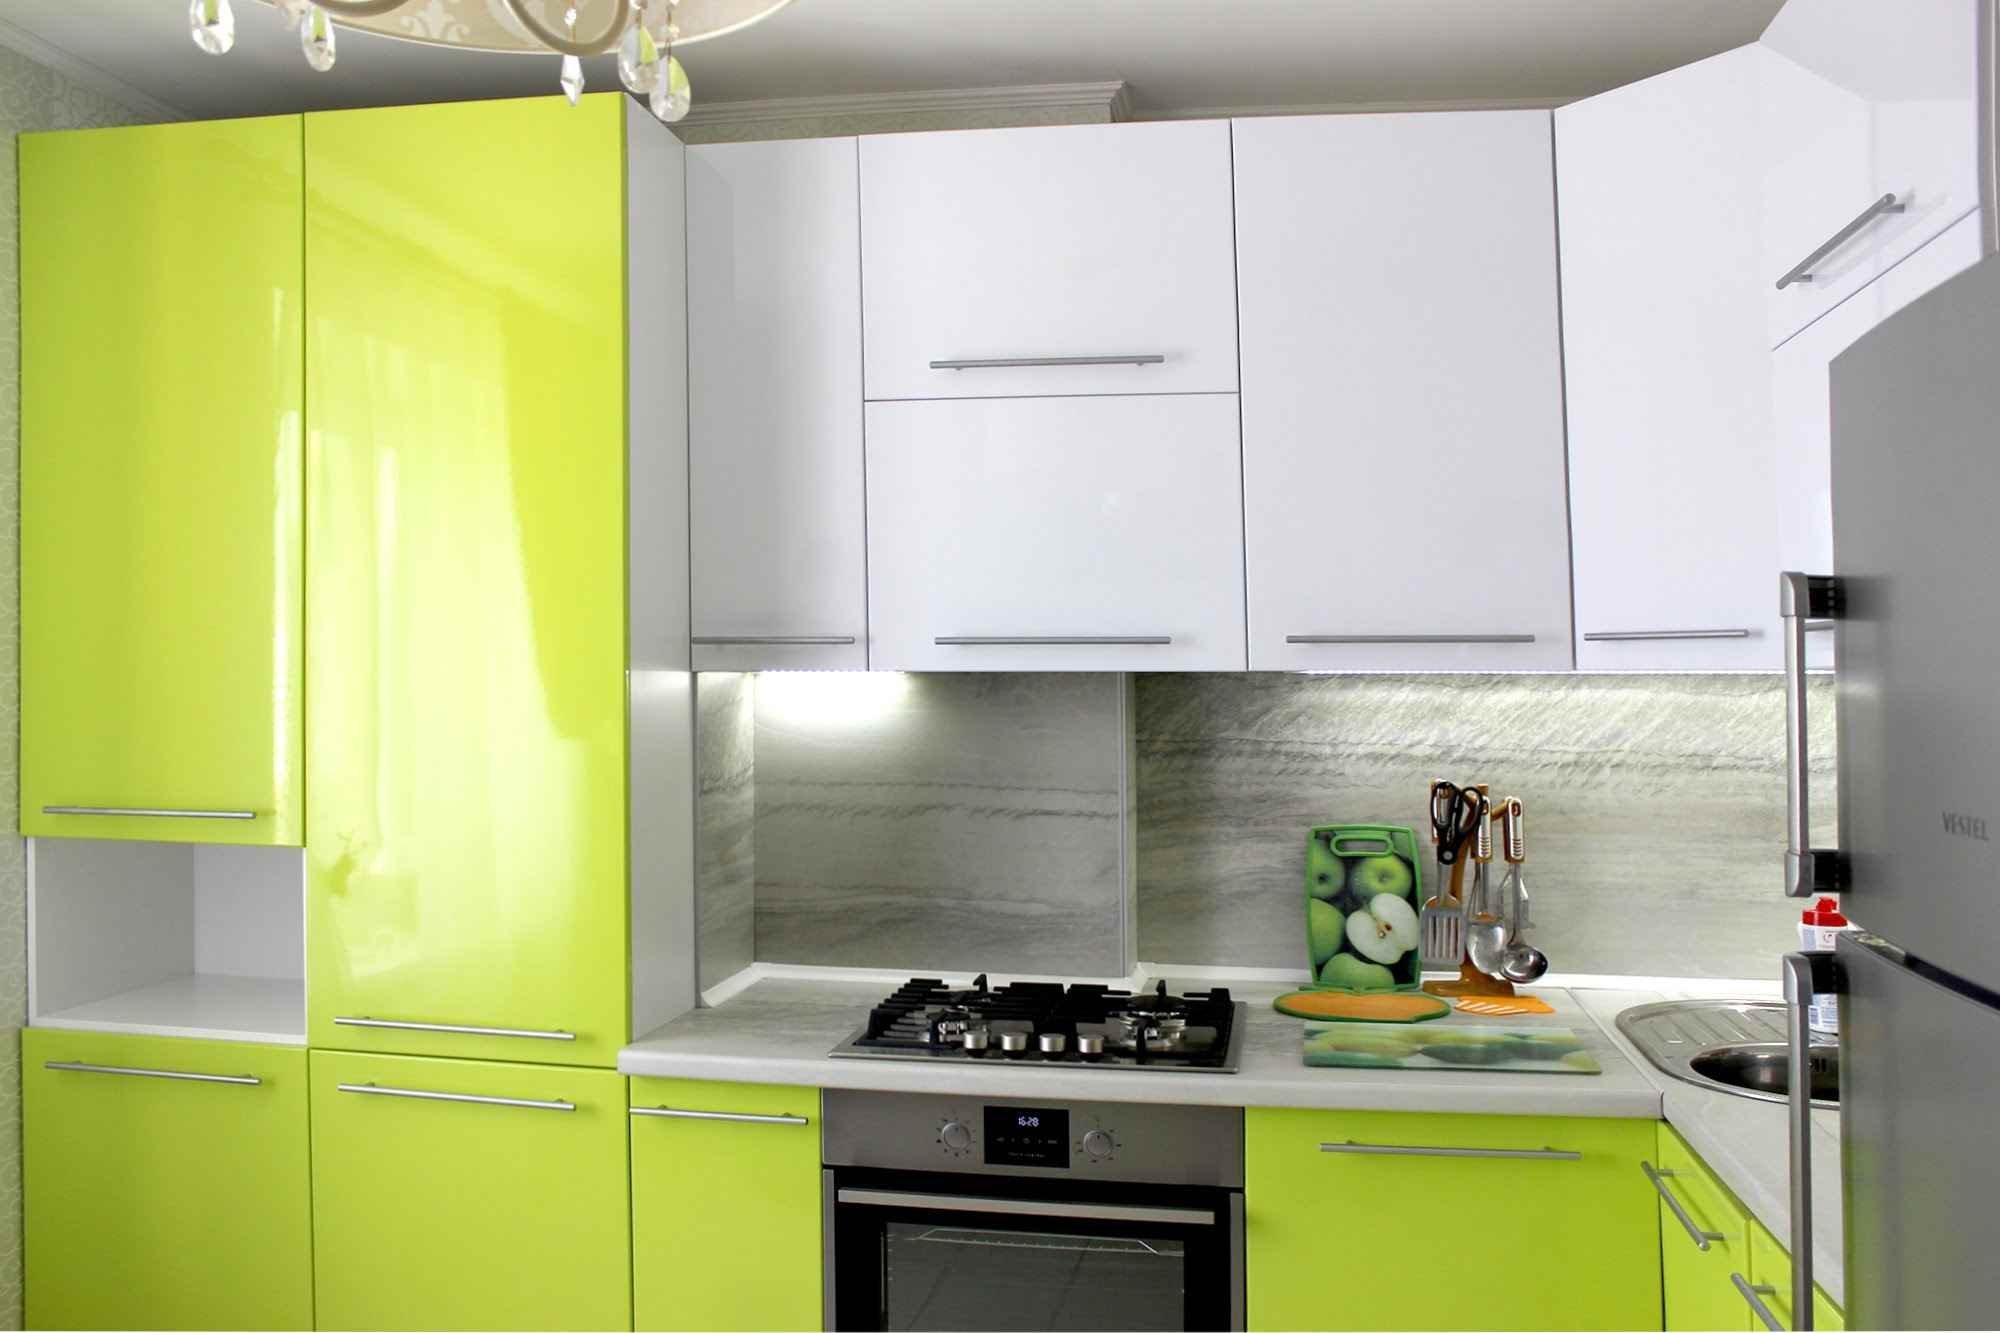 Кухонный гарнитур угловой для кухни 9 кв м фото дизайн с холодильником